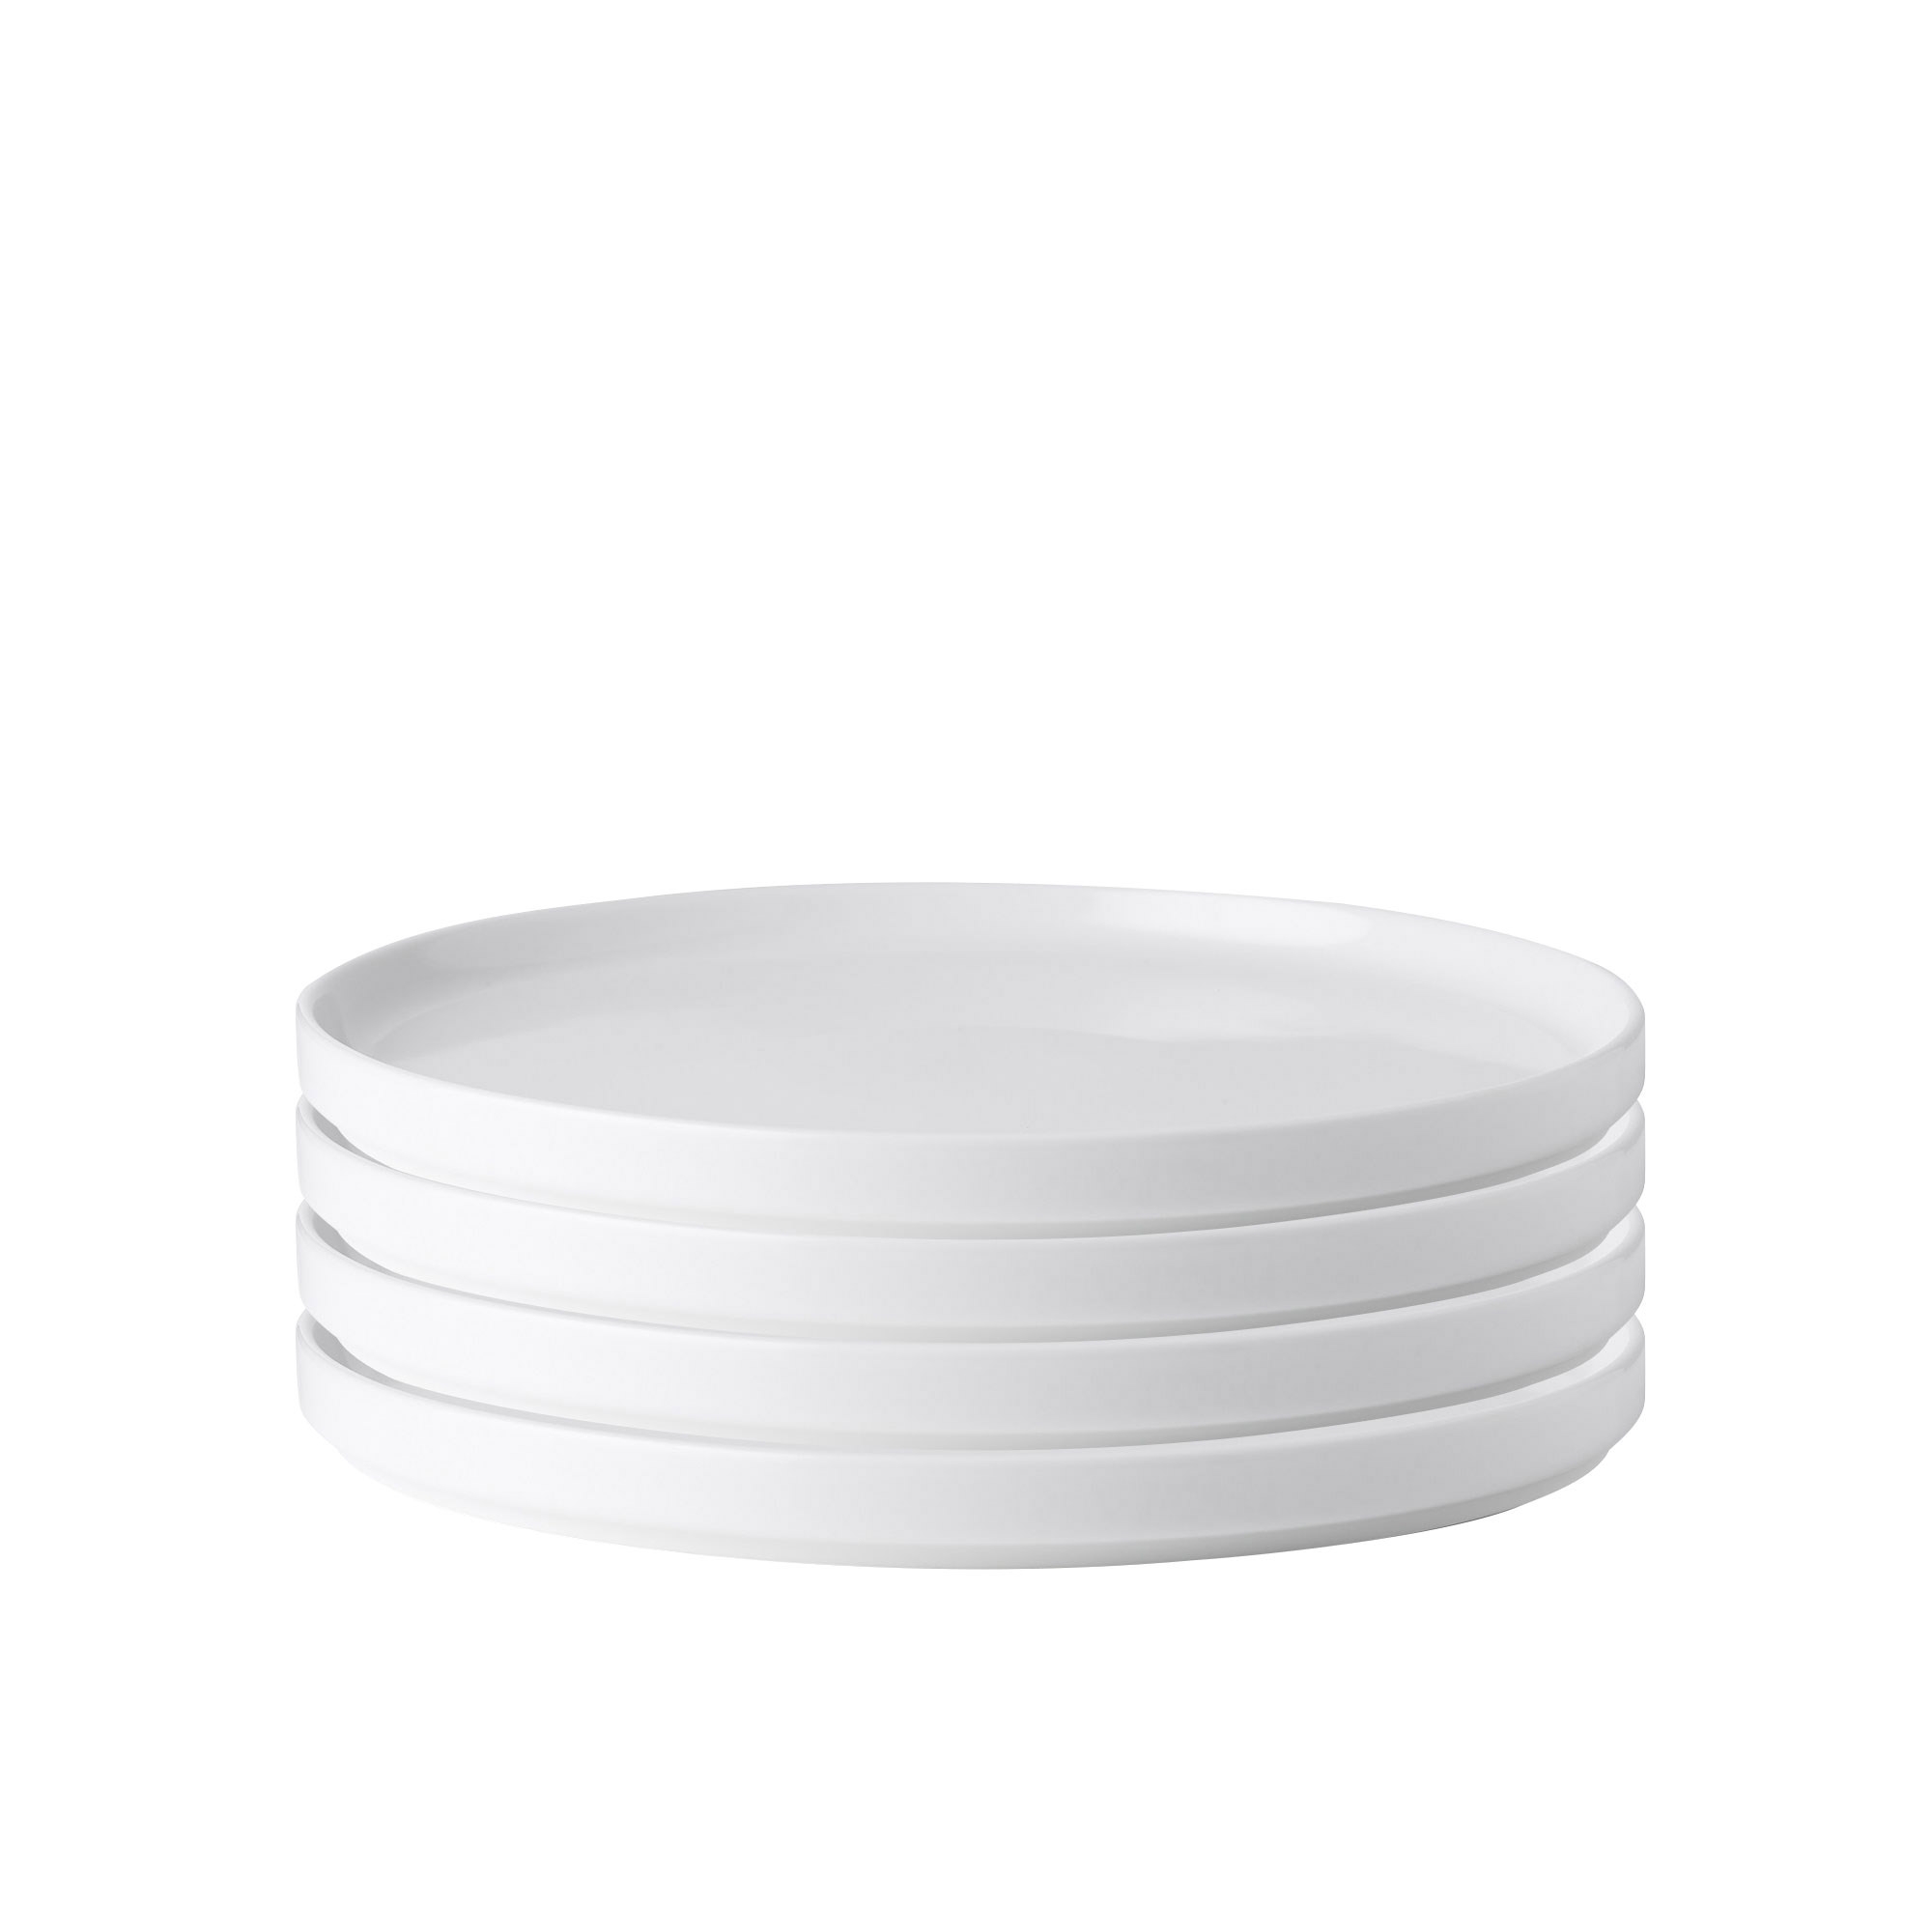 Noritake Stax White Dinner Plate Set of 4 Image 1